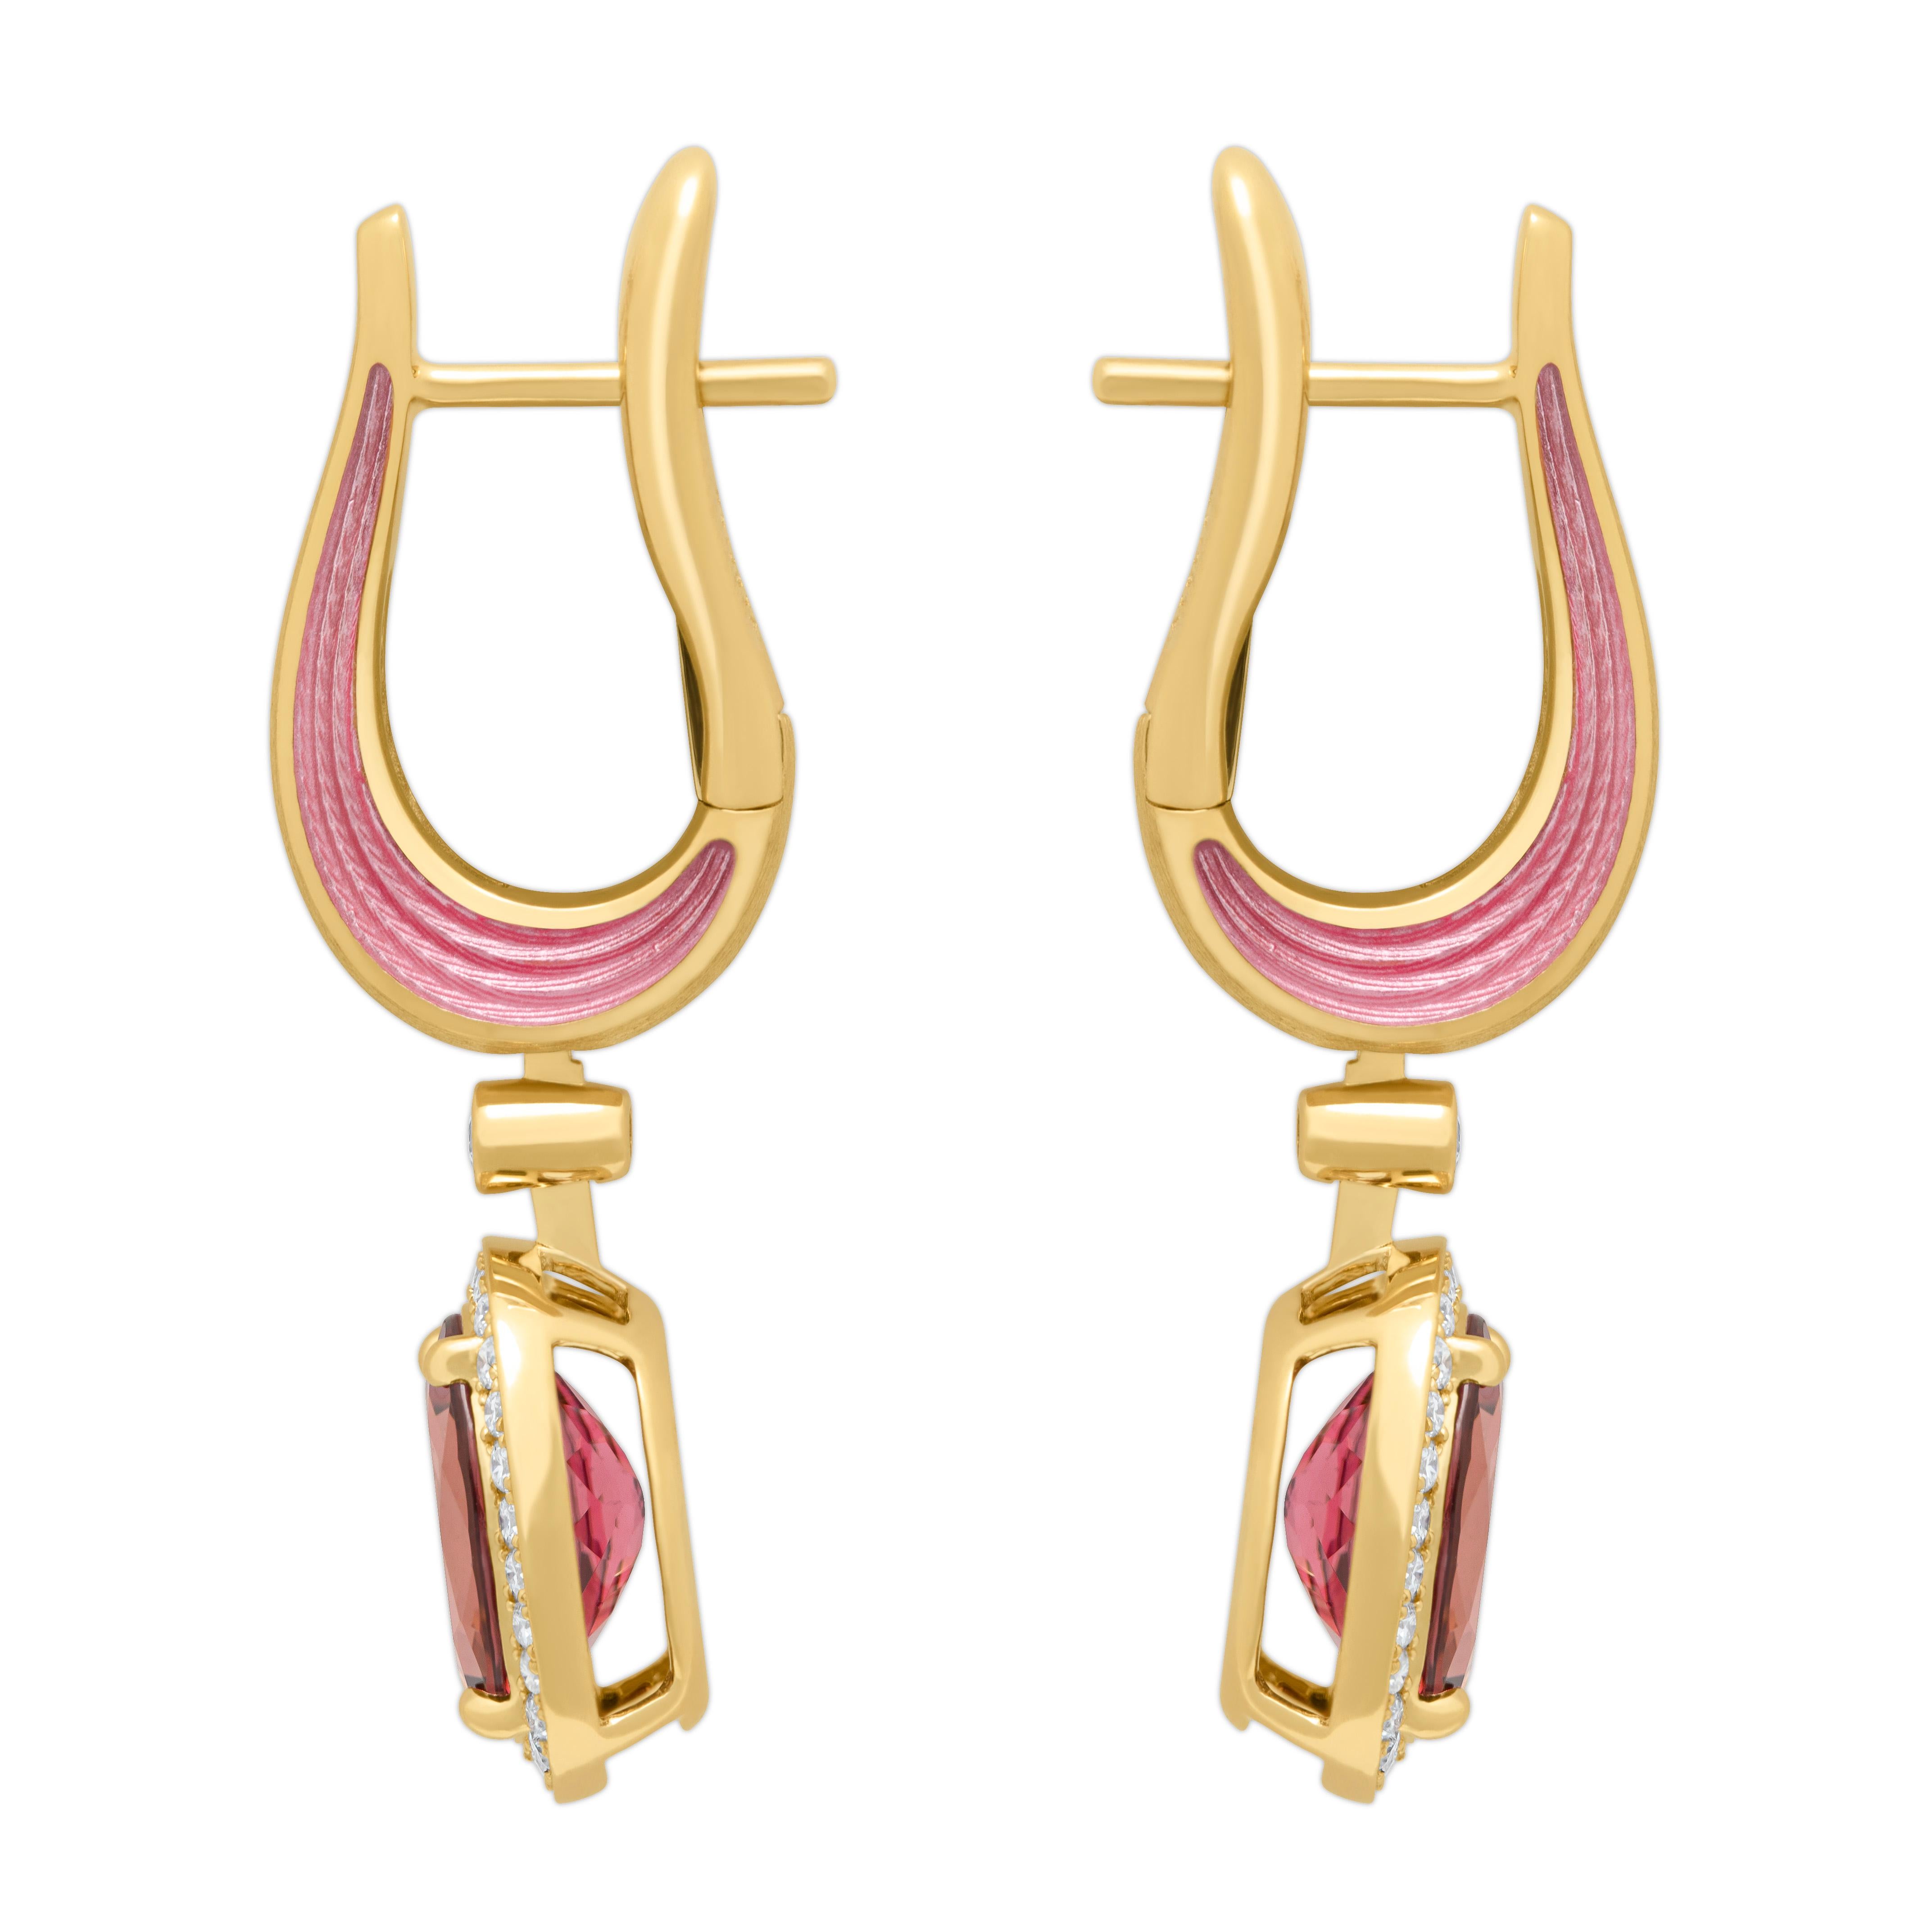 Rosa Turmalin 3,42 Karat Diamanten Emaille 18 Karat Gelbgold New Classic Ohrringe
Wir haben eine Serie von neuen Ohrringen mit der gleichen IDEA, aber mit anderen Details veröffentlicht. Wir stellen Ihnen Ohrringe aus 18 Karat Gelbgold vor, die